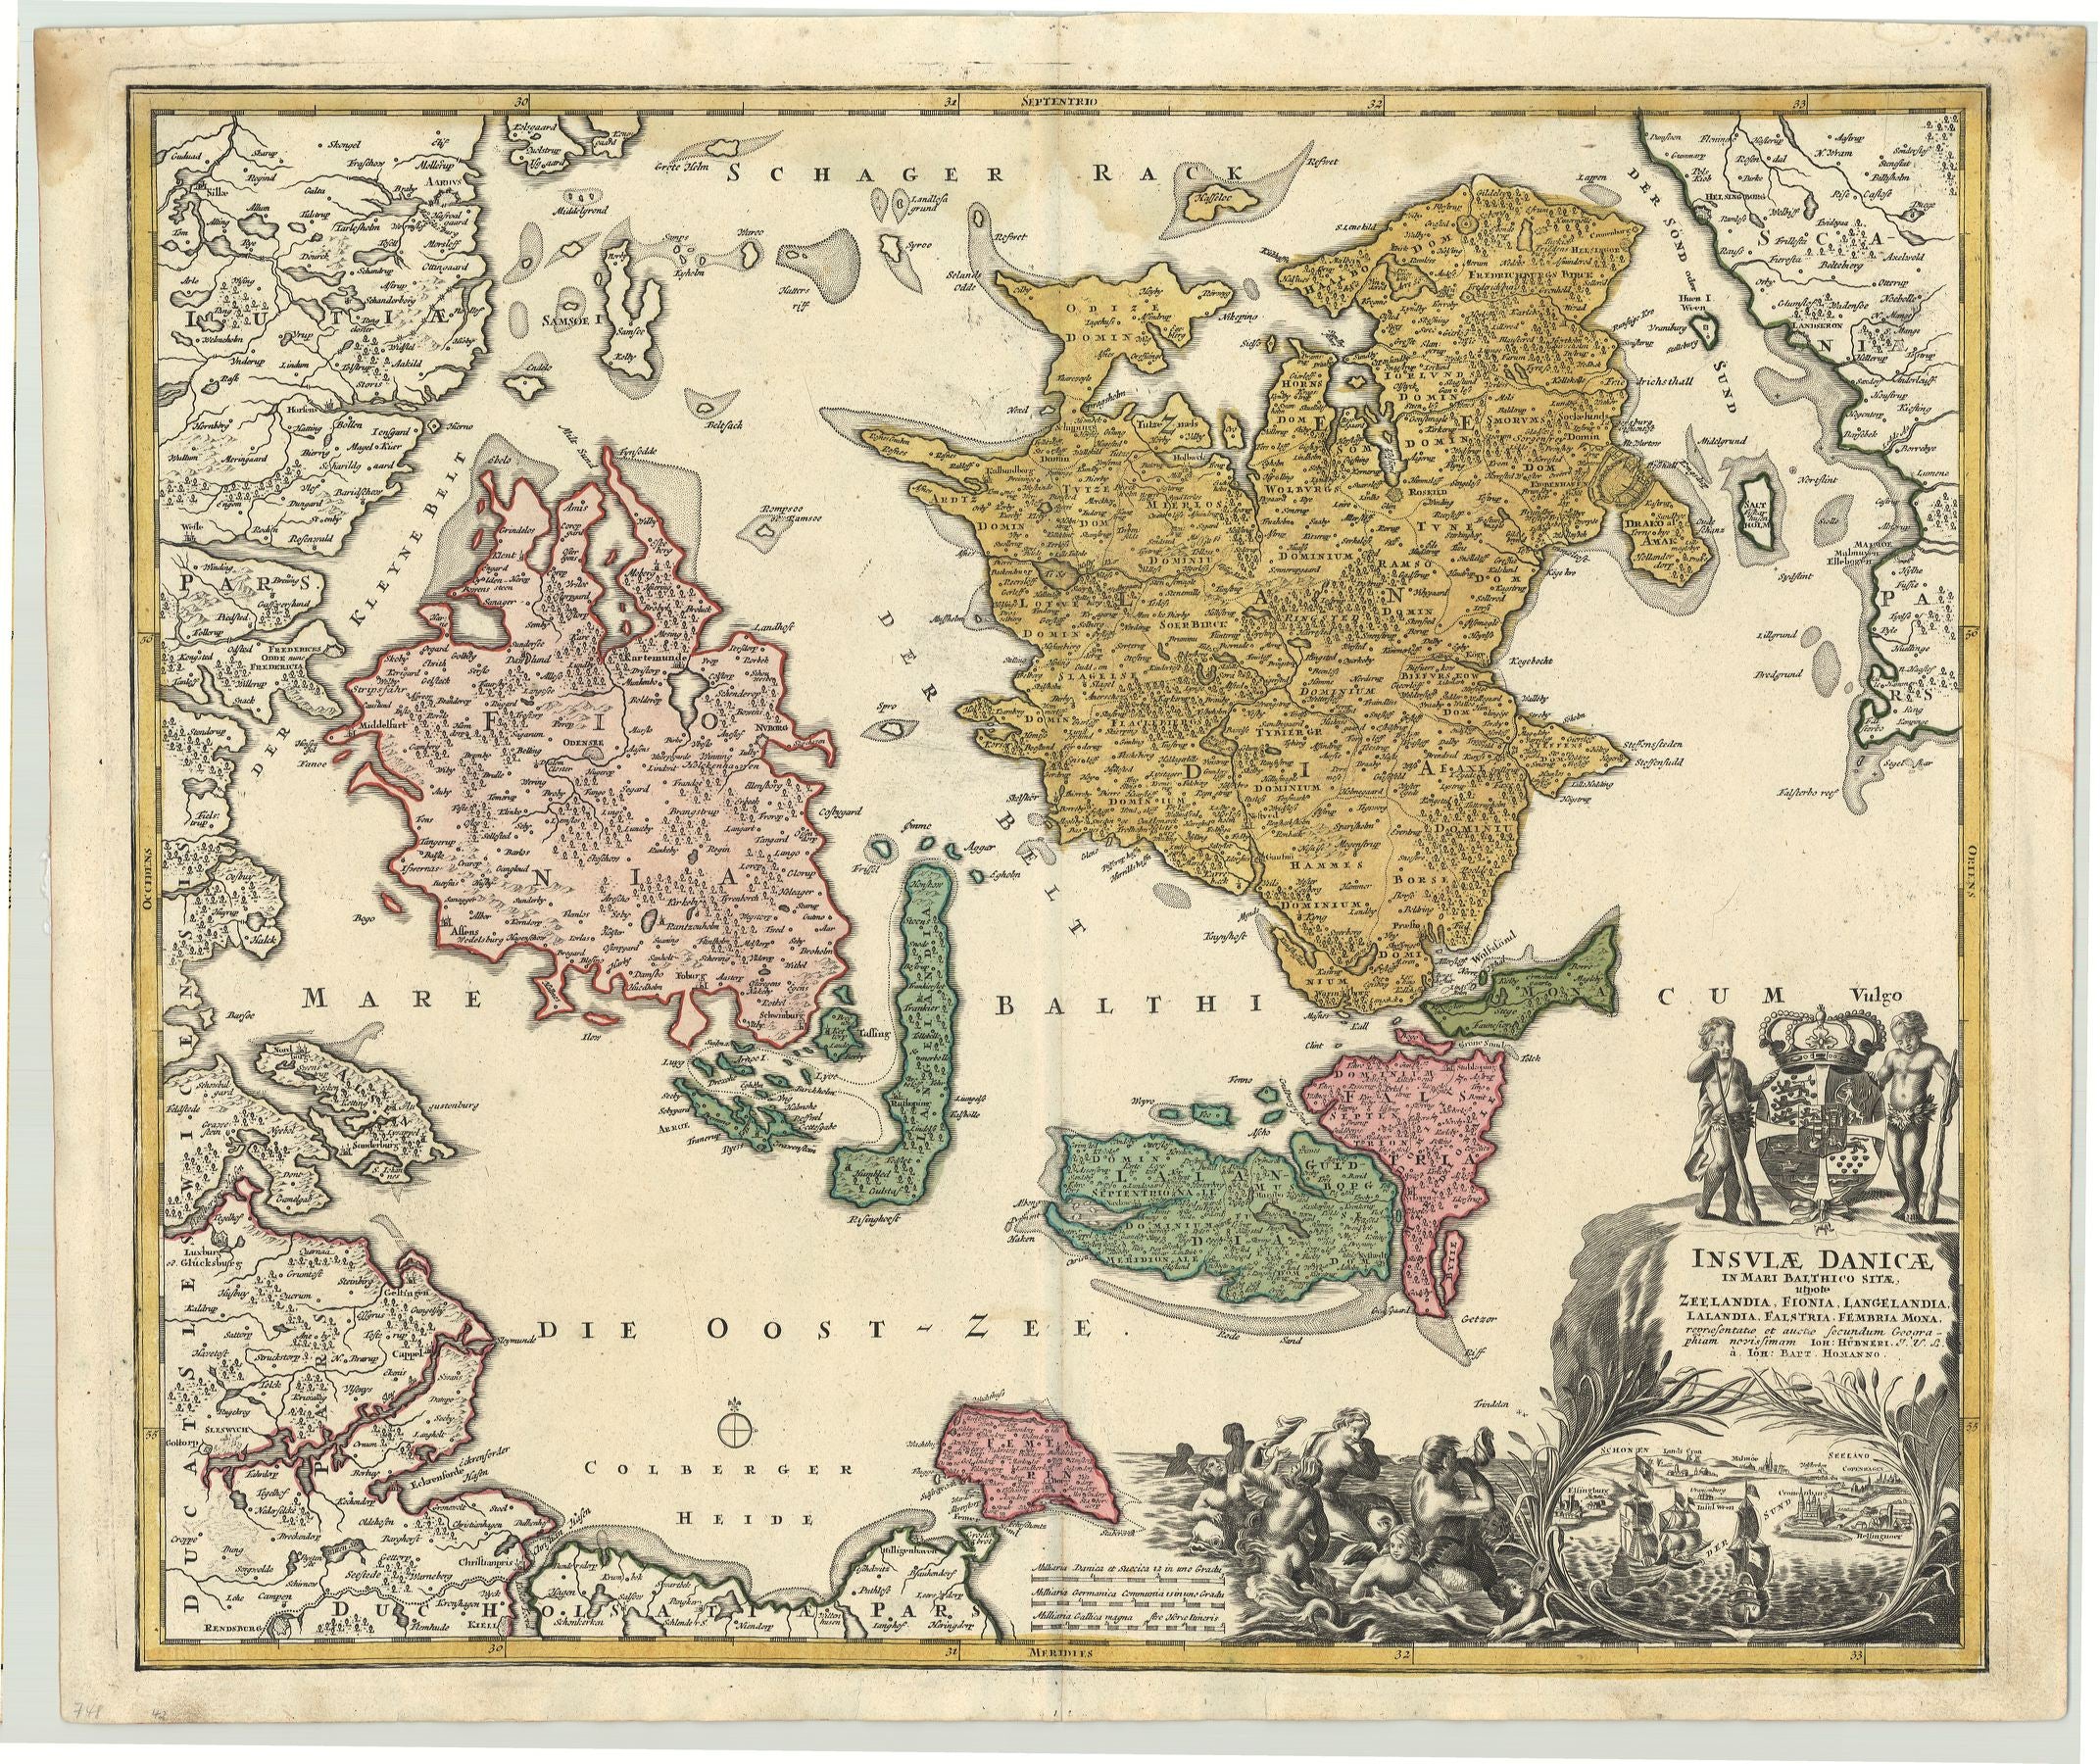 R2316  Homann, Johann Baptist: Insulae Danicae in mari Balthico sitae .. 1710